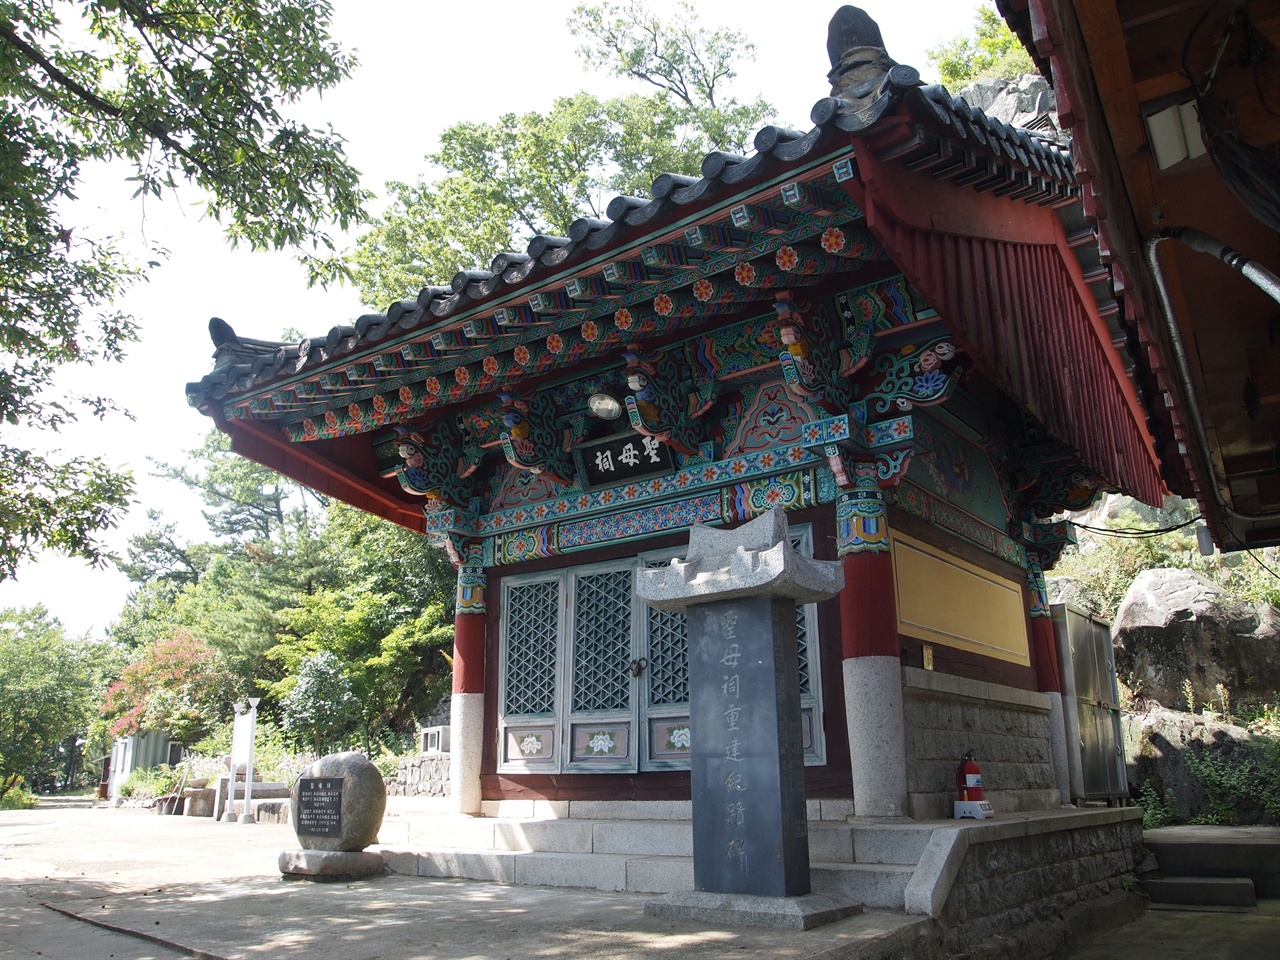 선도산에 세워진 성모사, 박혁거세의 어머니 성모와 관련한 설화가 전해진다.